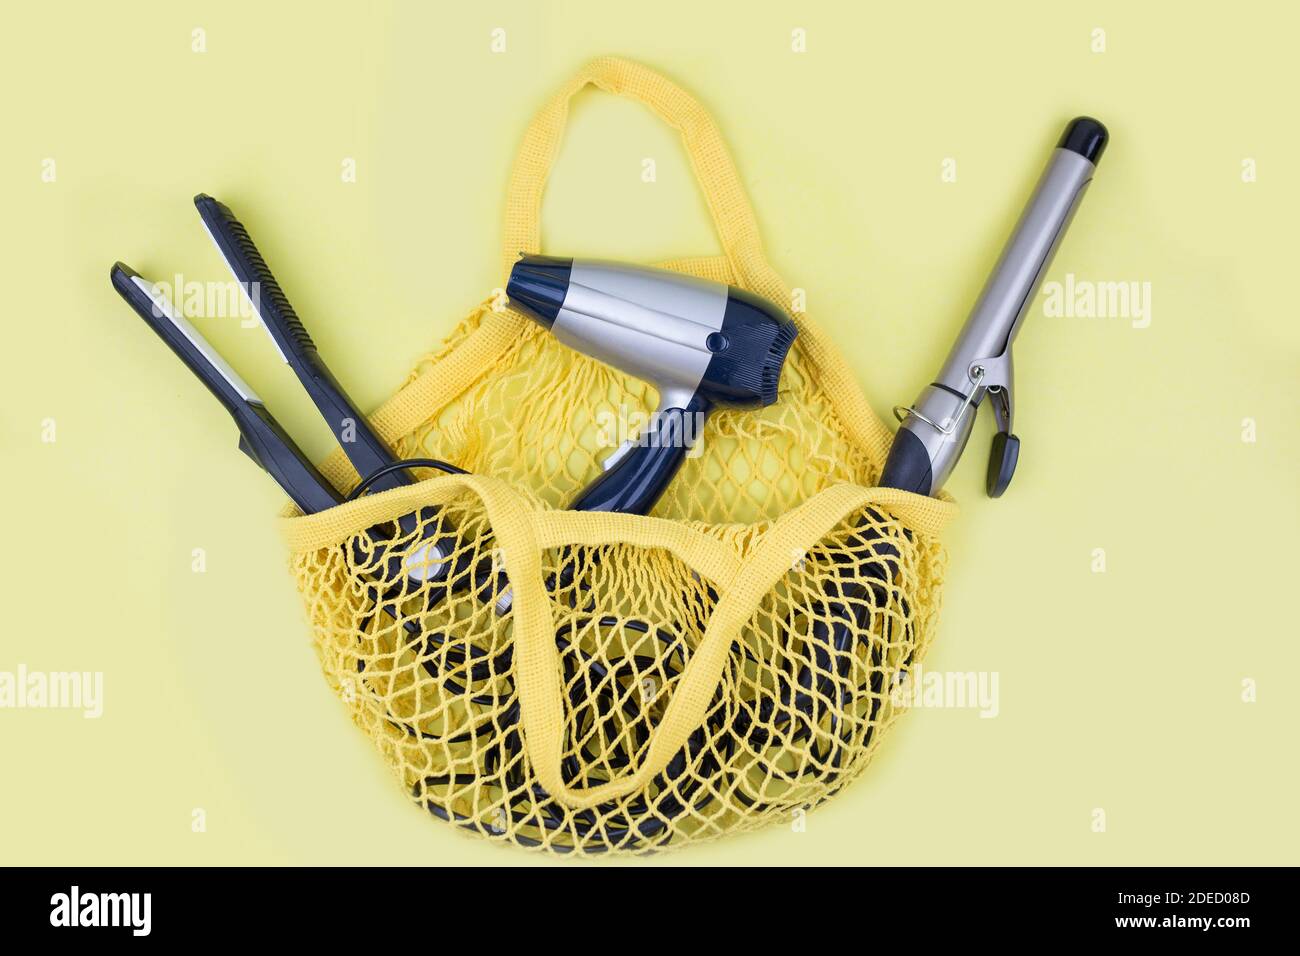 ferro arricciacapelli, asciugacapelli e piastra per capelli sono in una borsetta gialla. Borsa per la spesa con articoli da parrucchiere Foto Stock